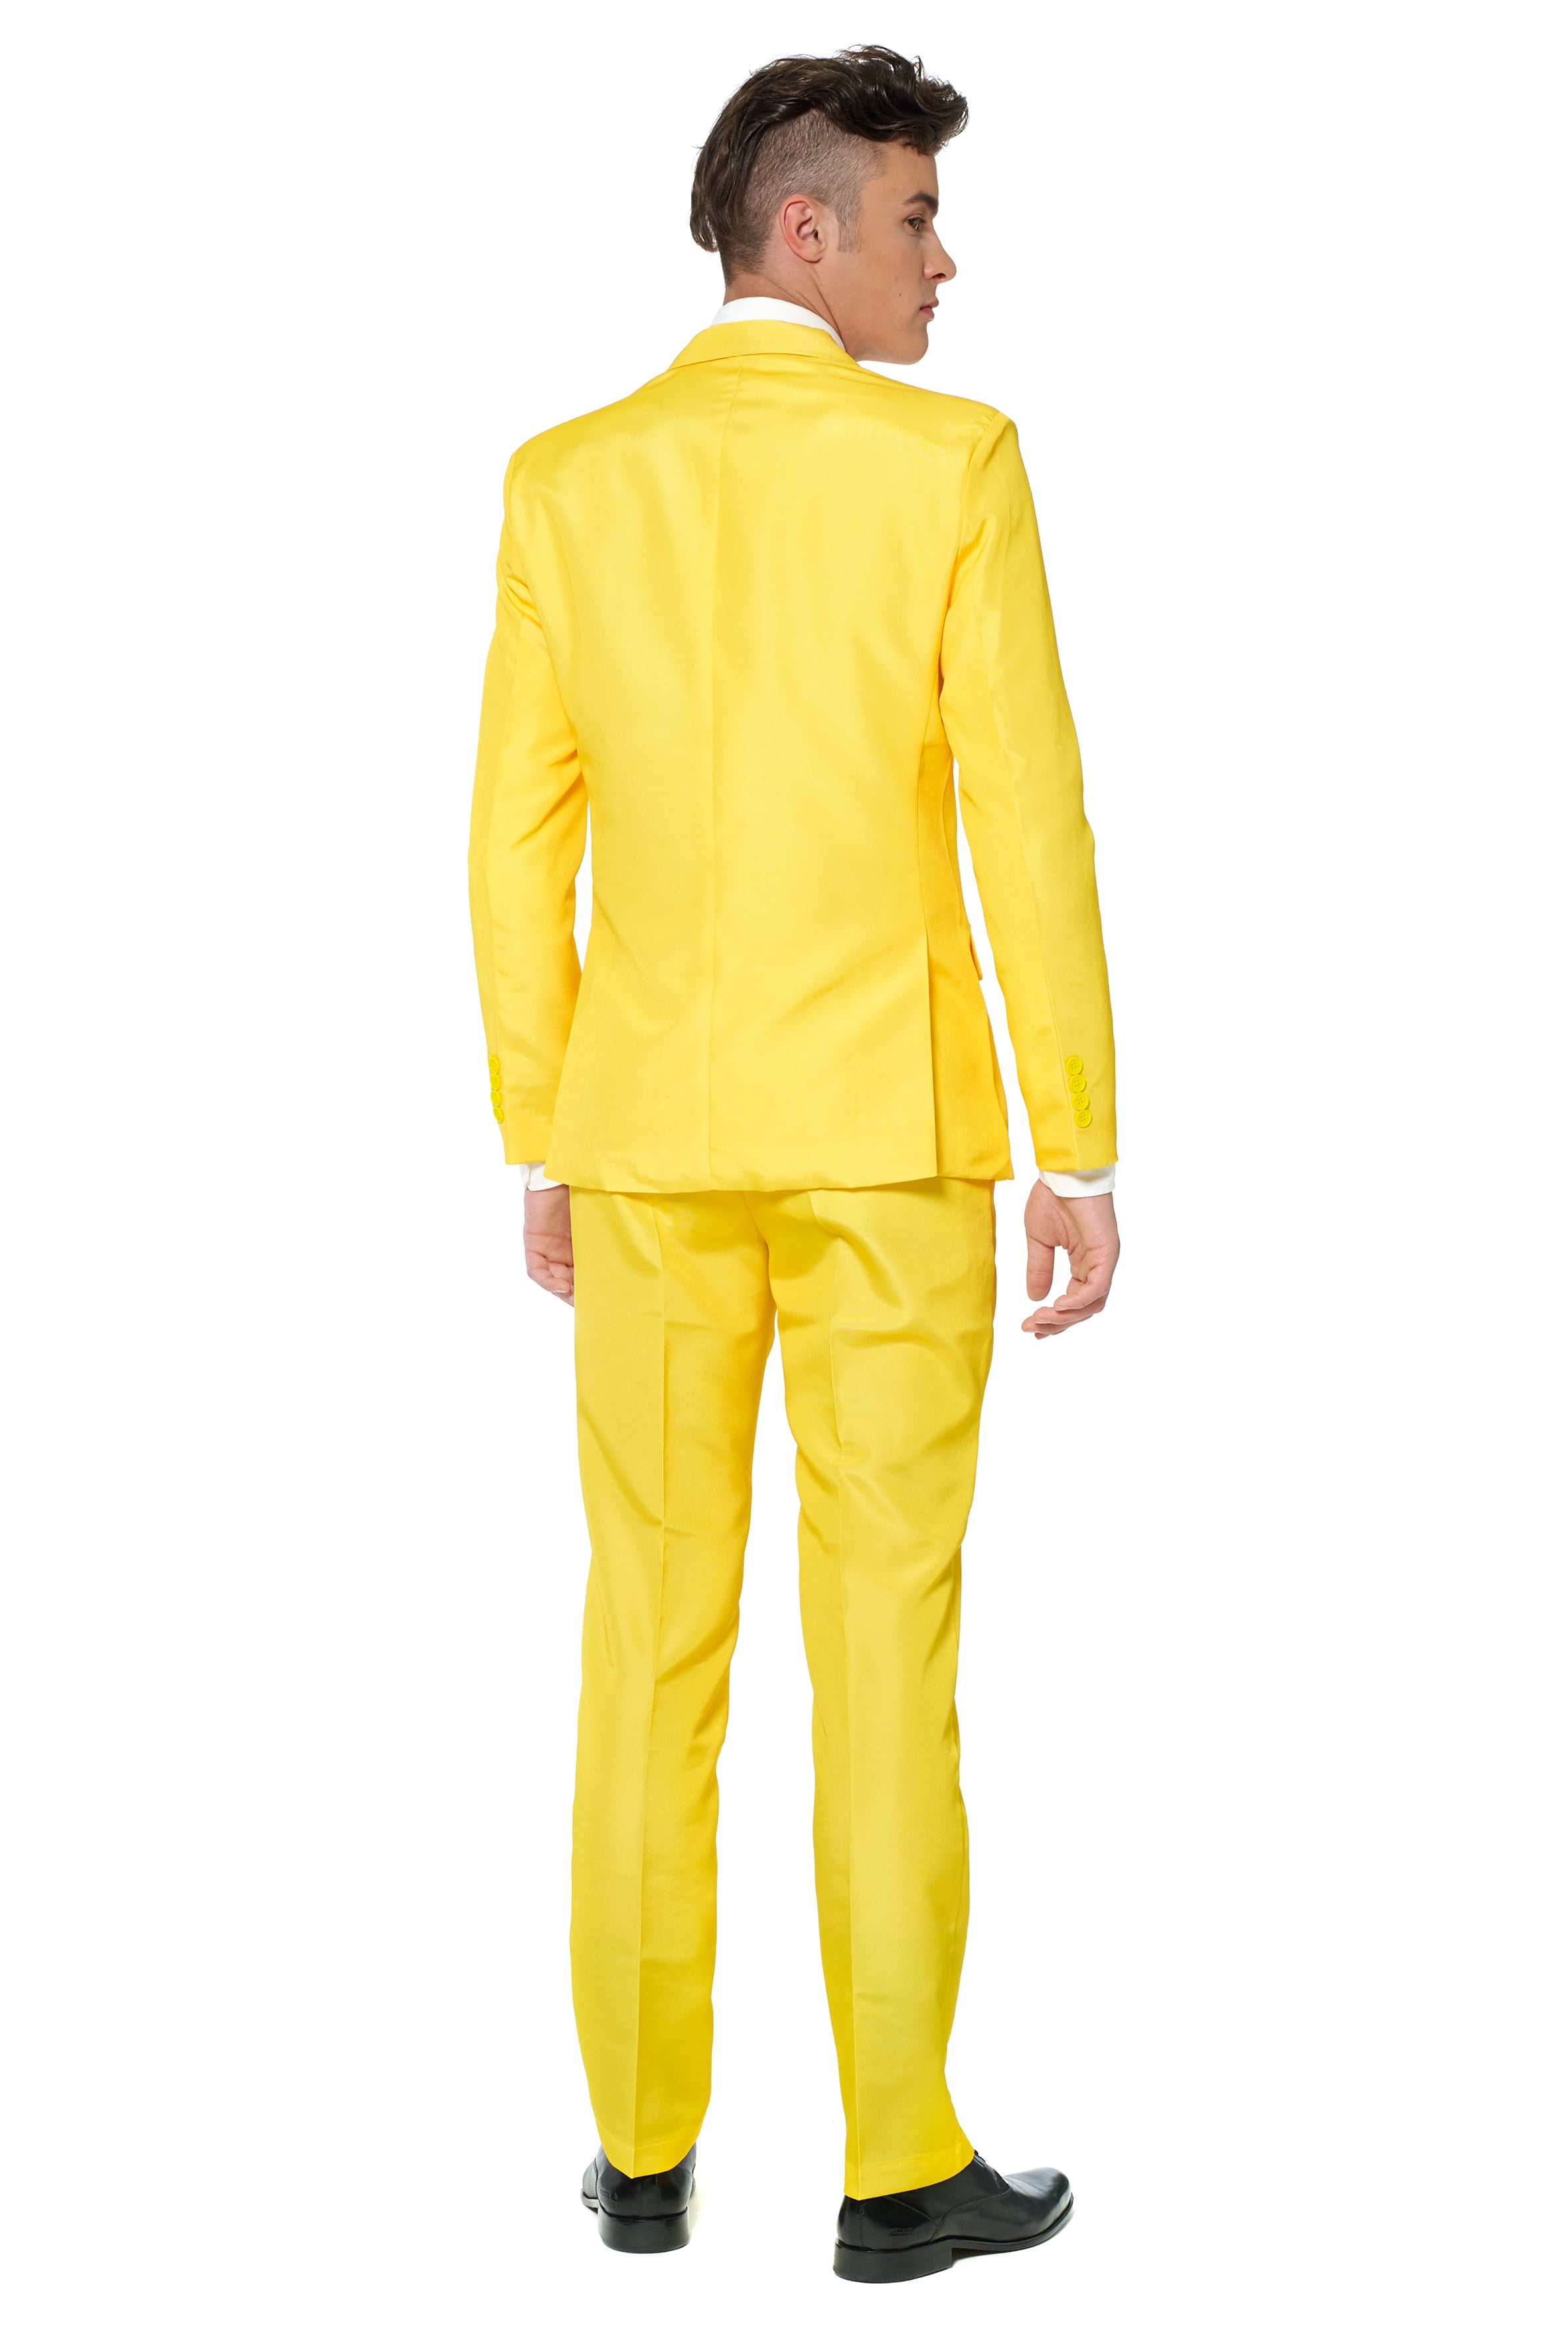 Men Suits 2 Piece Suit Slim fit One Button Mustard Suit For | Etsy | Black  men fashion casual, Men fashion casual outfits, Black men fashion swag